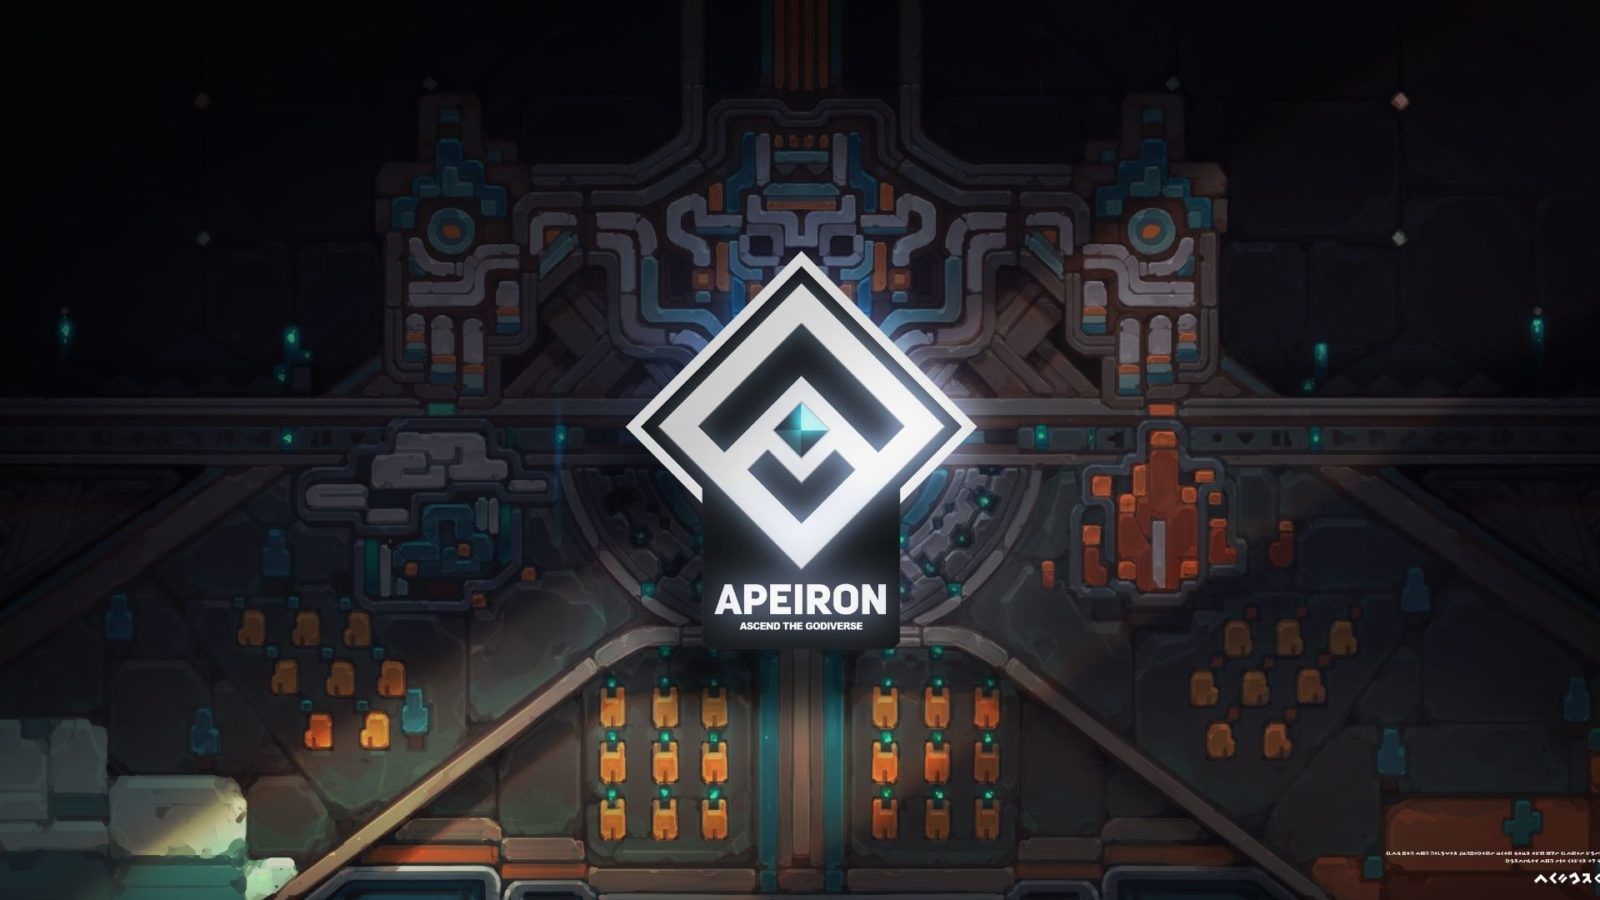 Apeiron' NFT raises US$3 million in GameFi preseed round